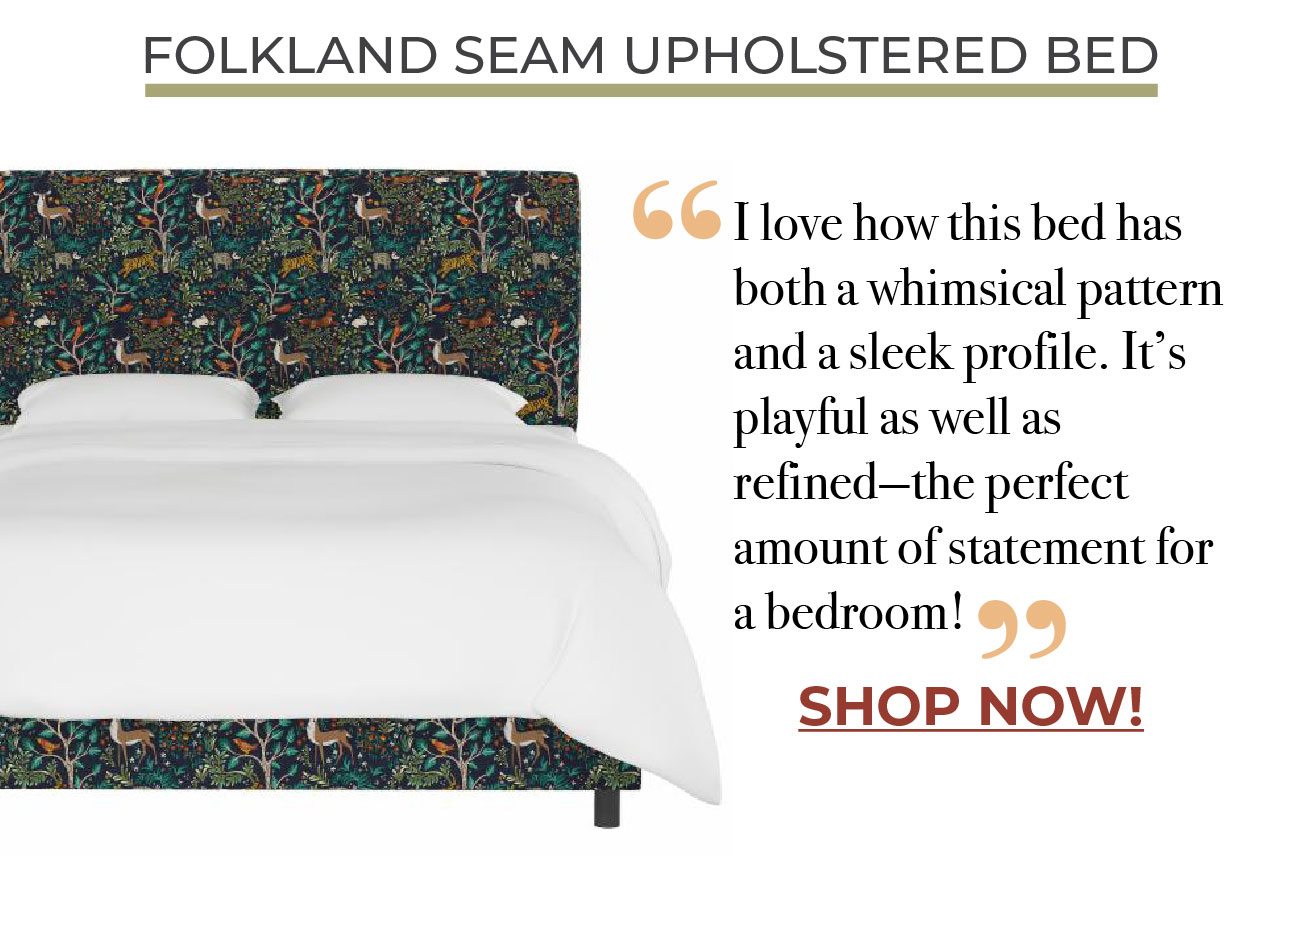 Folkland Seam Upholstered Bed